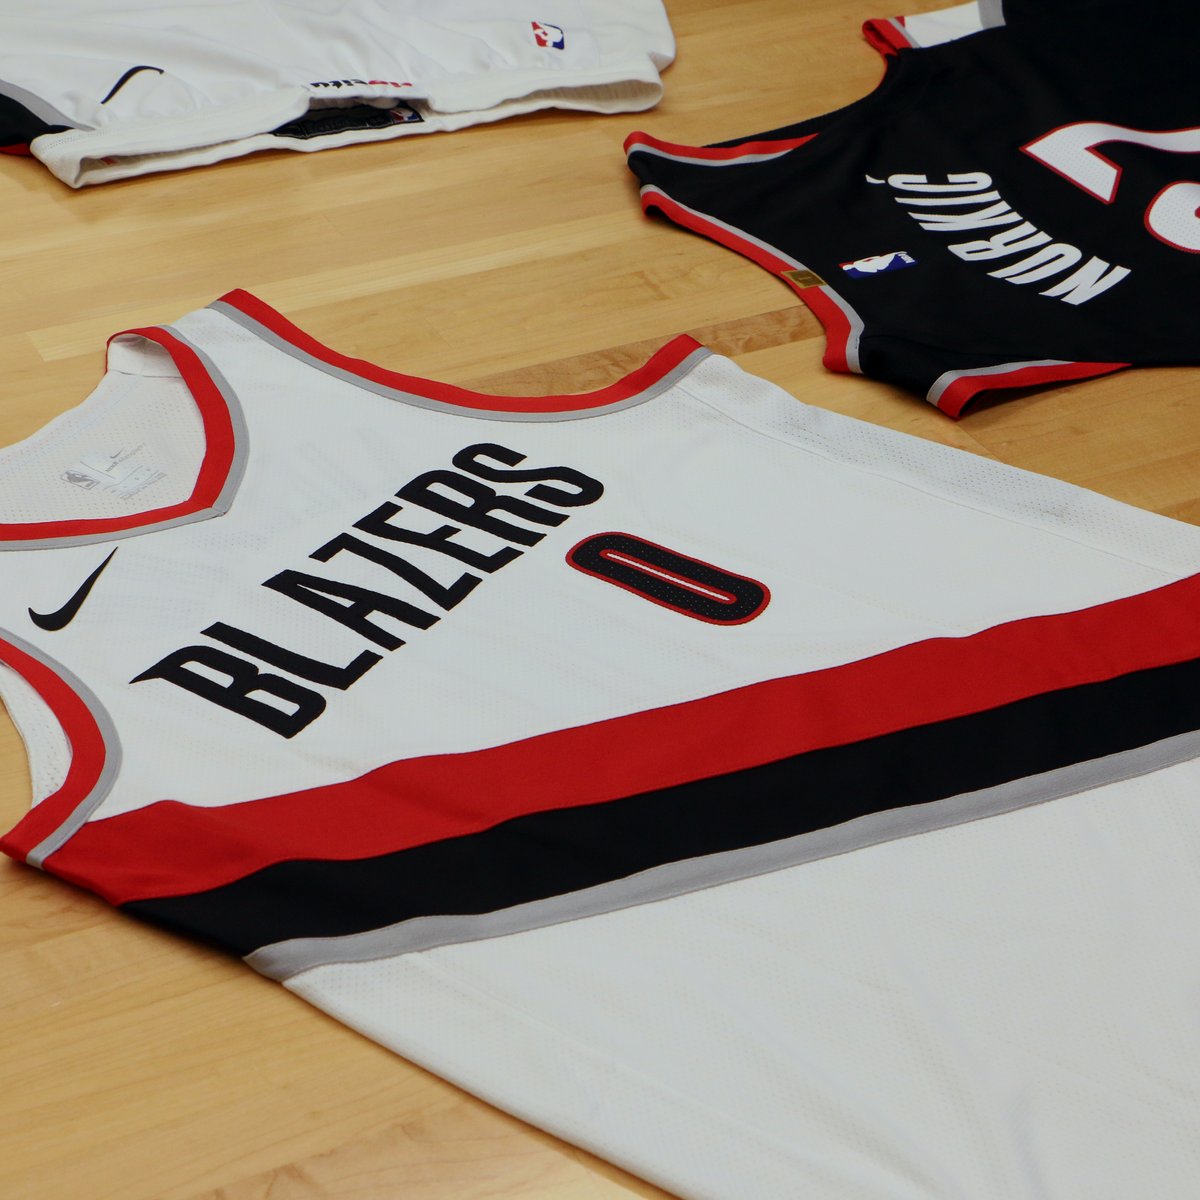 Portland Trail Blazers unveil new Nike uniforms 